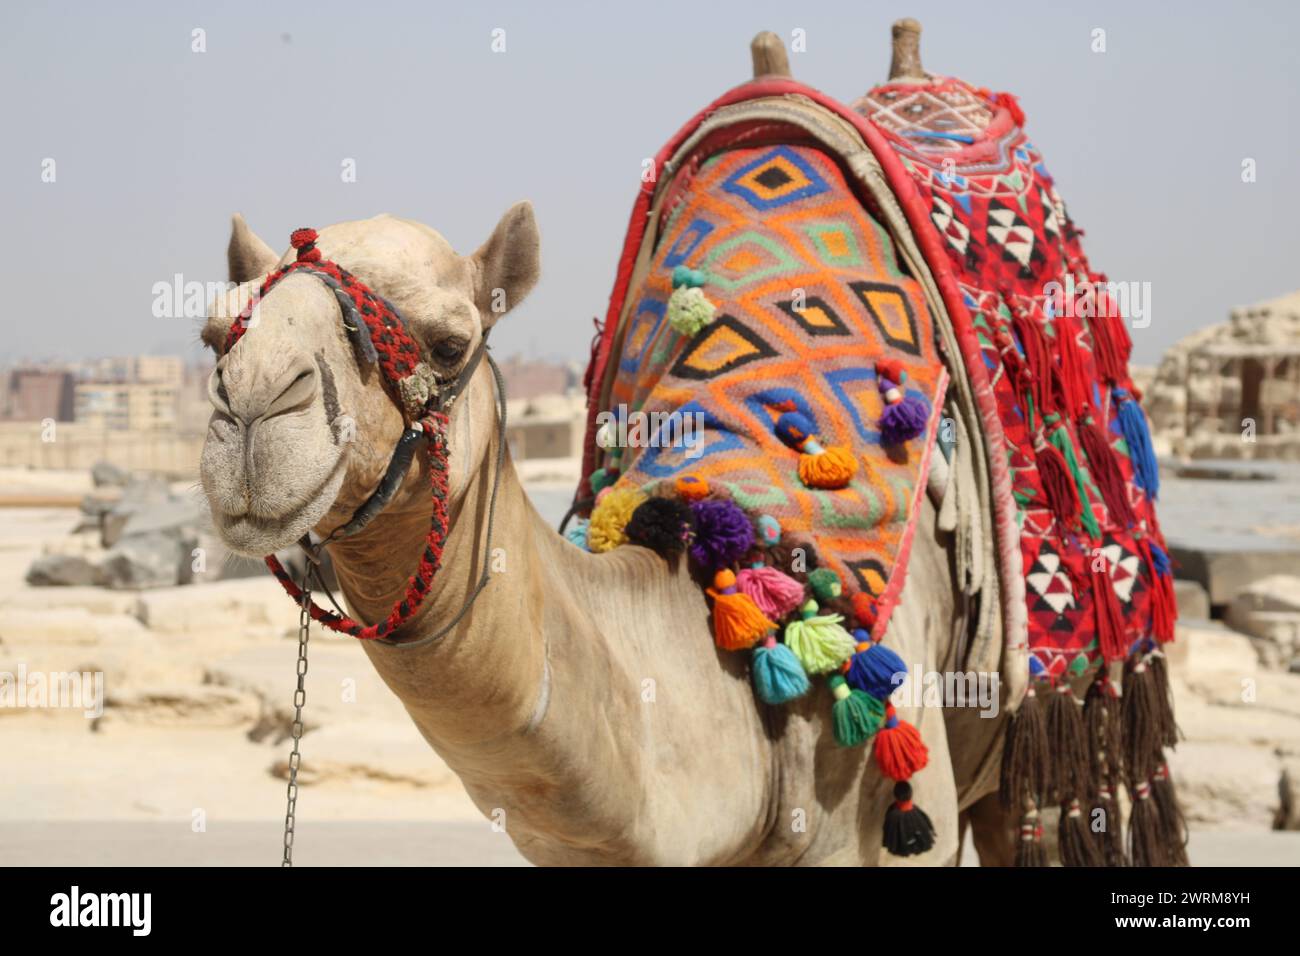 Die Dünen durchqueren, Schritt für Schritt - das einsame Kamel der Sahara. Wie ein Kamel können wir die Wüste zu unserem Zuhause machen und uns von den Sternen leiten lassen Stockfoto